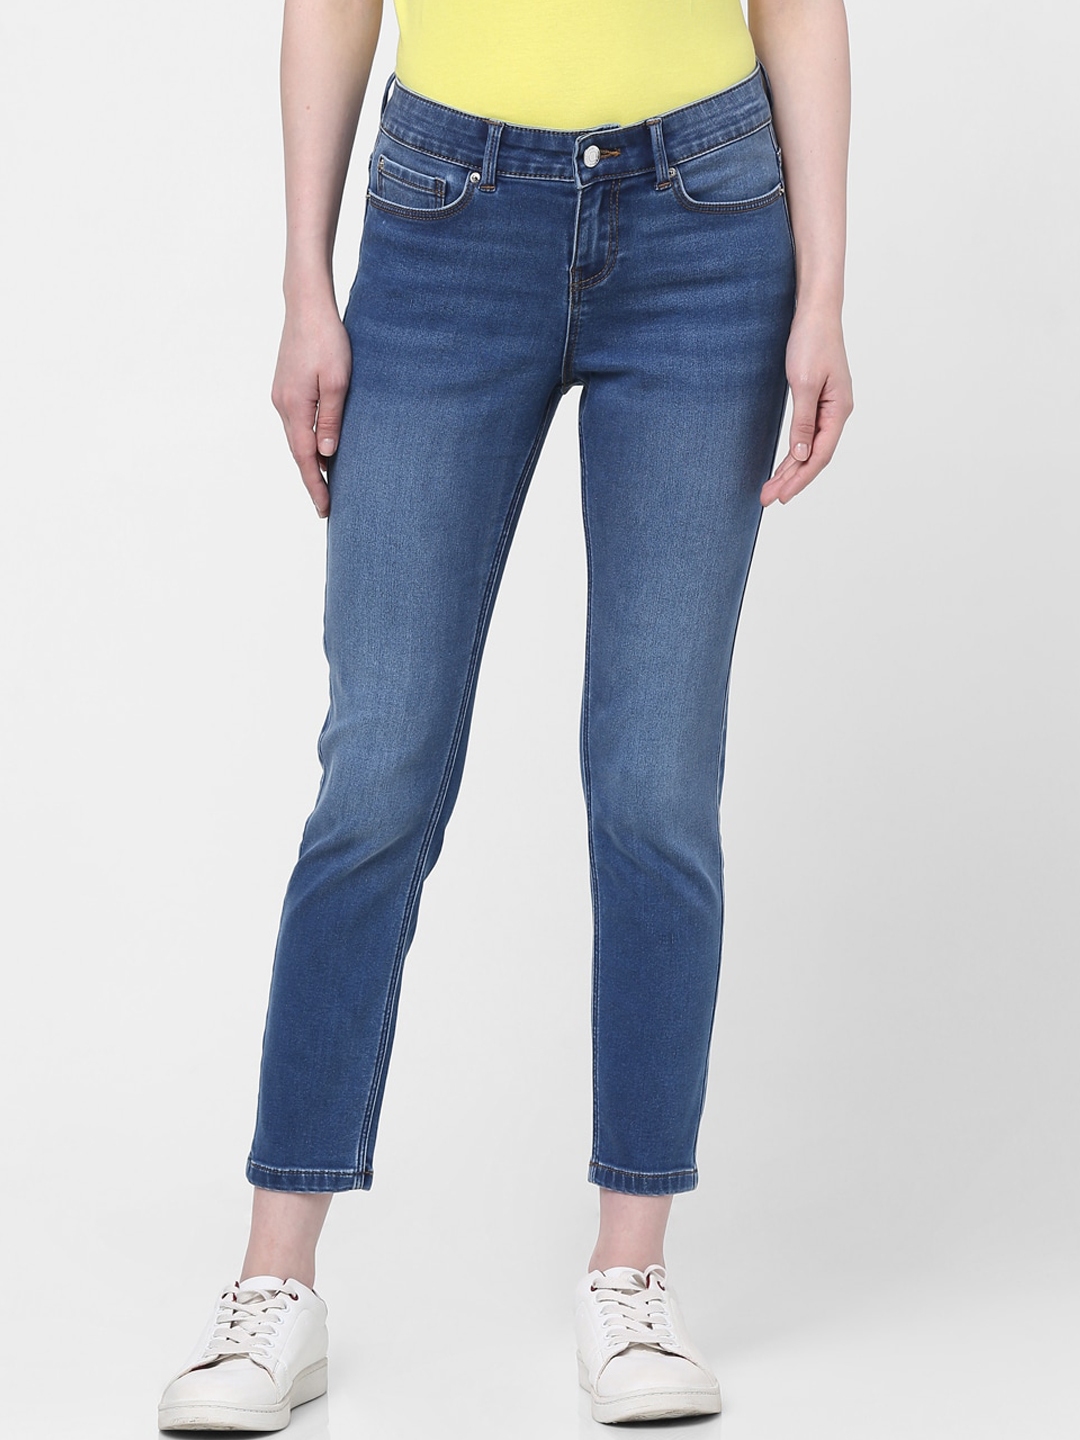 Buy Vero Moda Women Blue Skinny Fit Light Fade Jeans - Jeans for Women ...